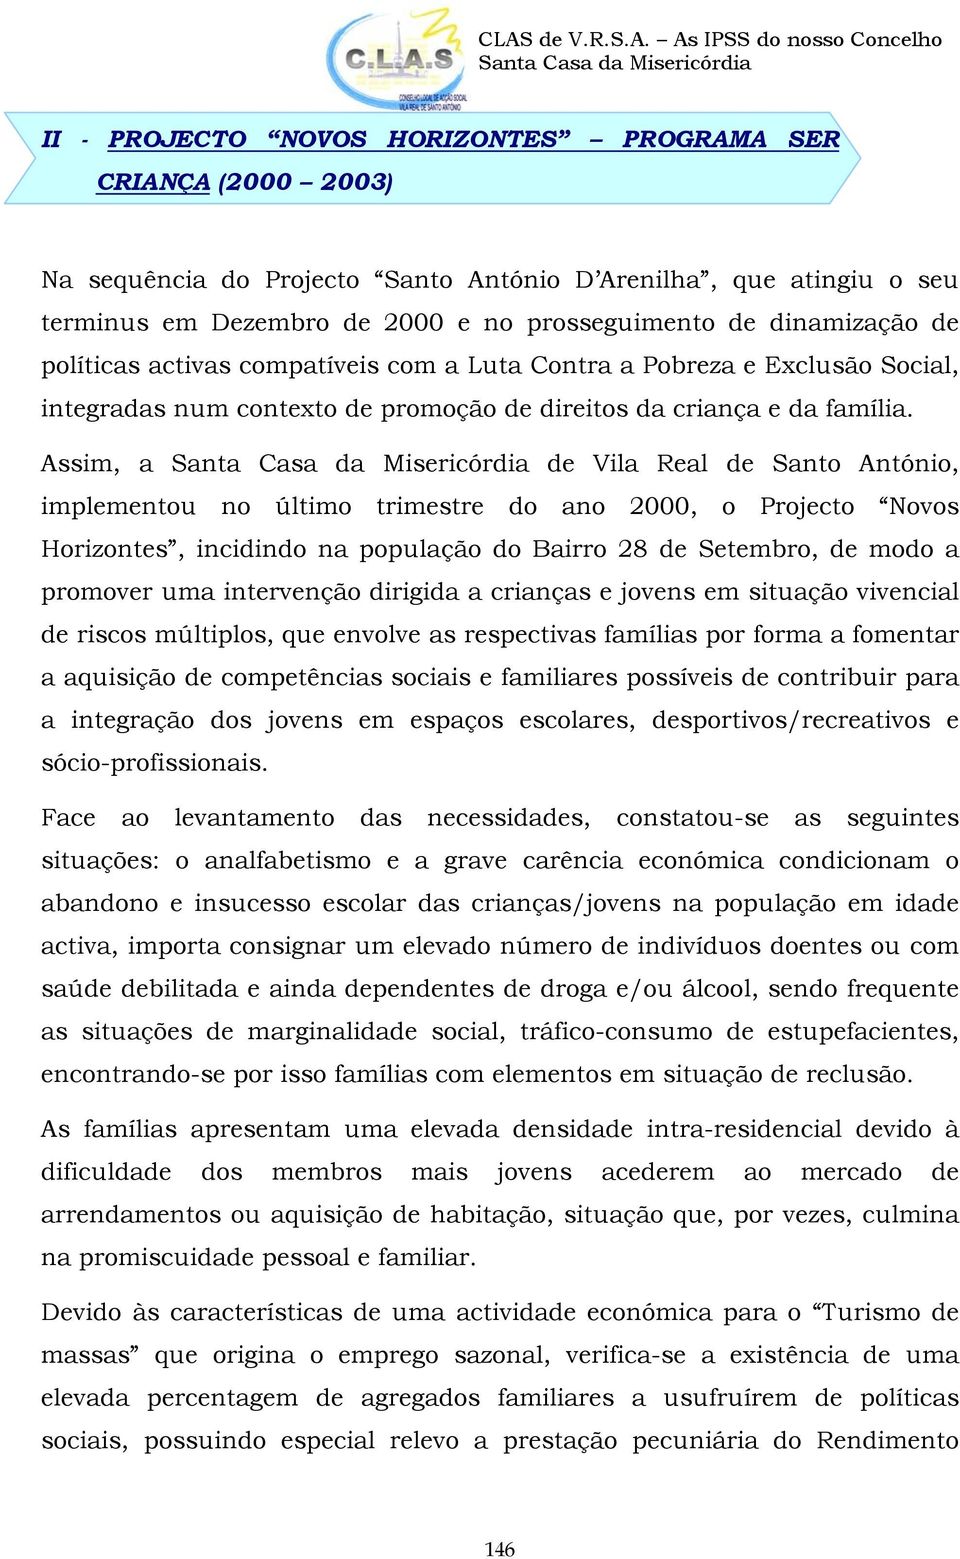 Assim, a de Vila Real de Santo António, implementou no último trimestre do ano 2000, o Projecto Novos Horizontes, incidindo na população do Bairro 28 de Setembro, de modo a promover uma intervenção